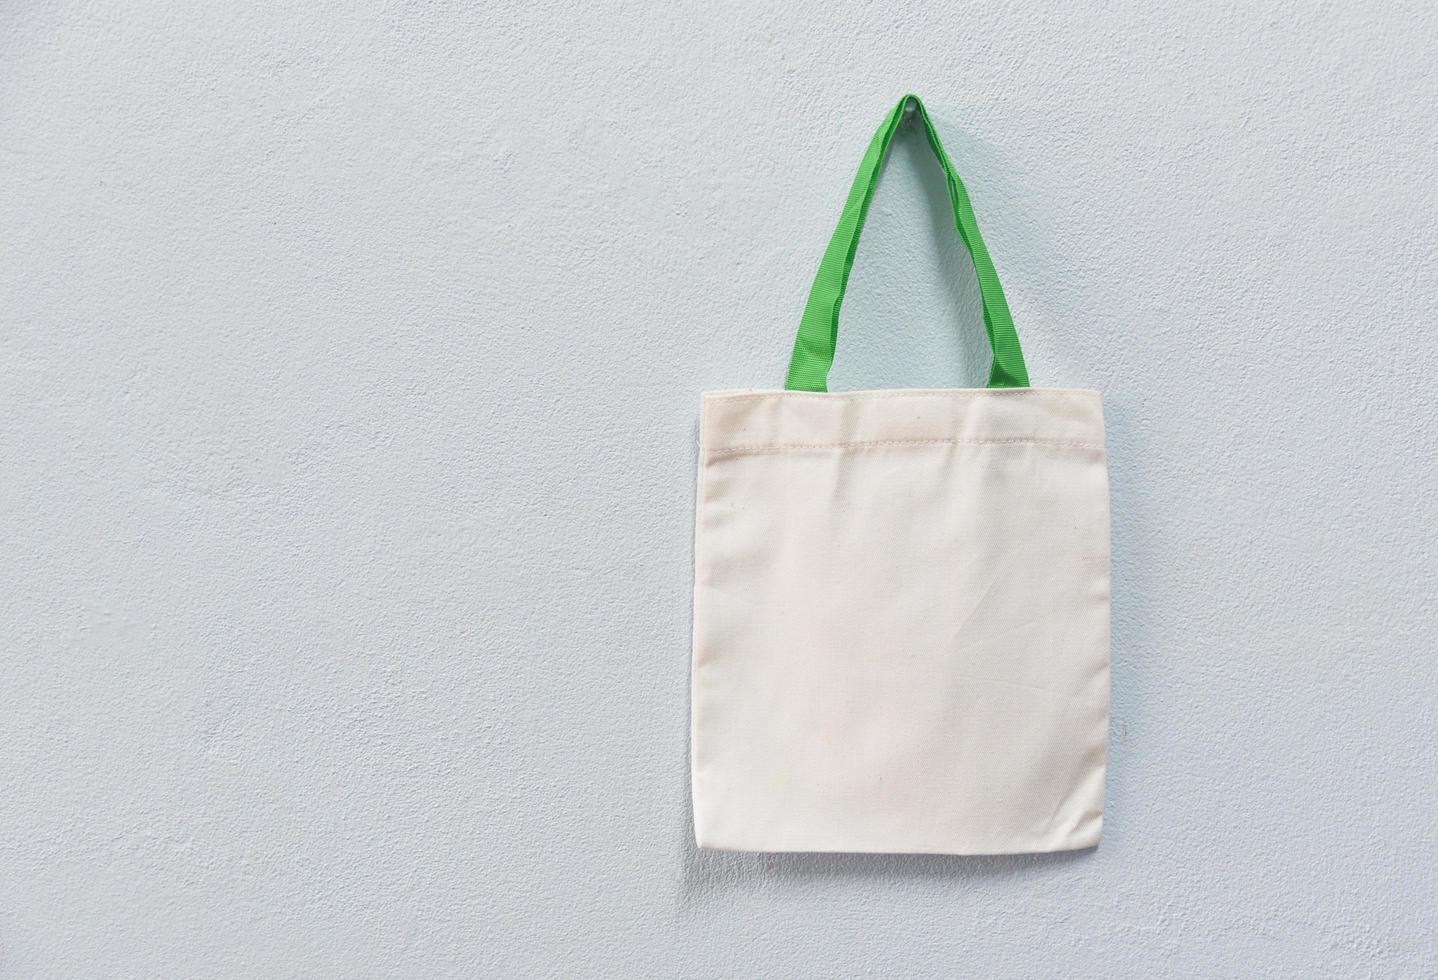 Tote blanco tela de lona bolsa ecológica saco de compras de tela sobre fondo de pared foto